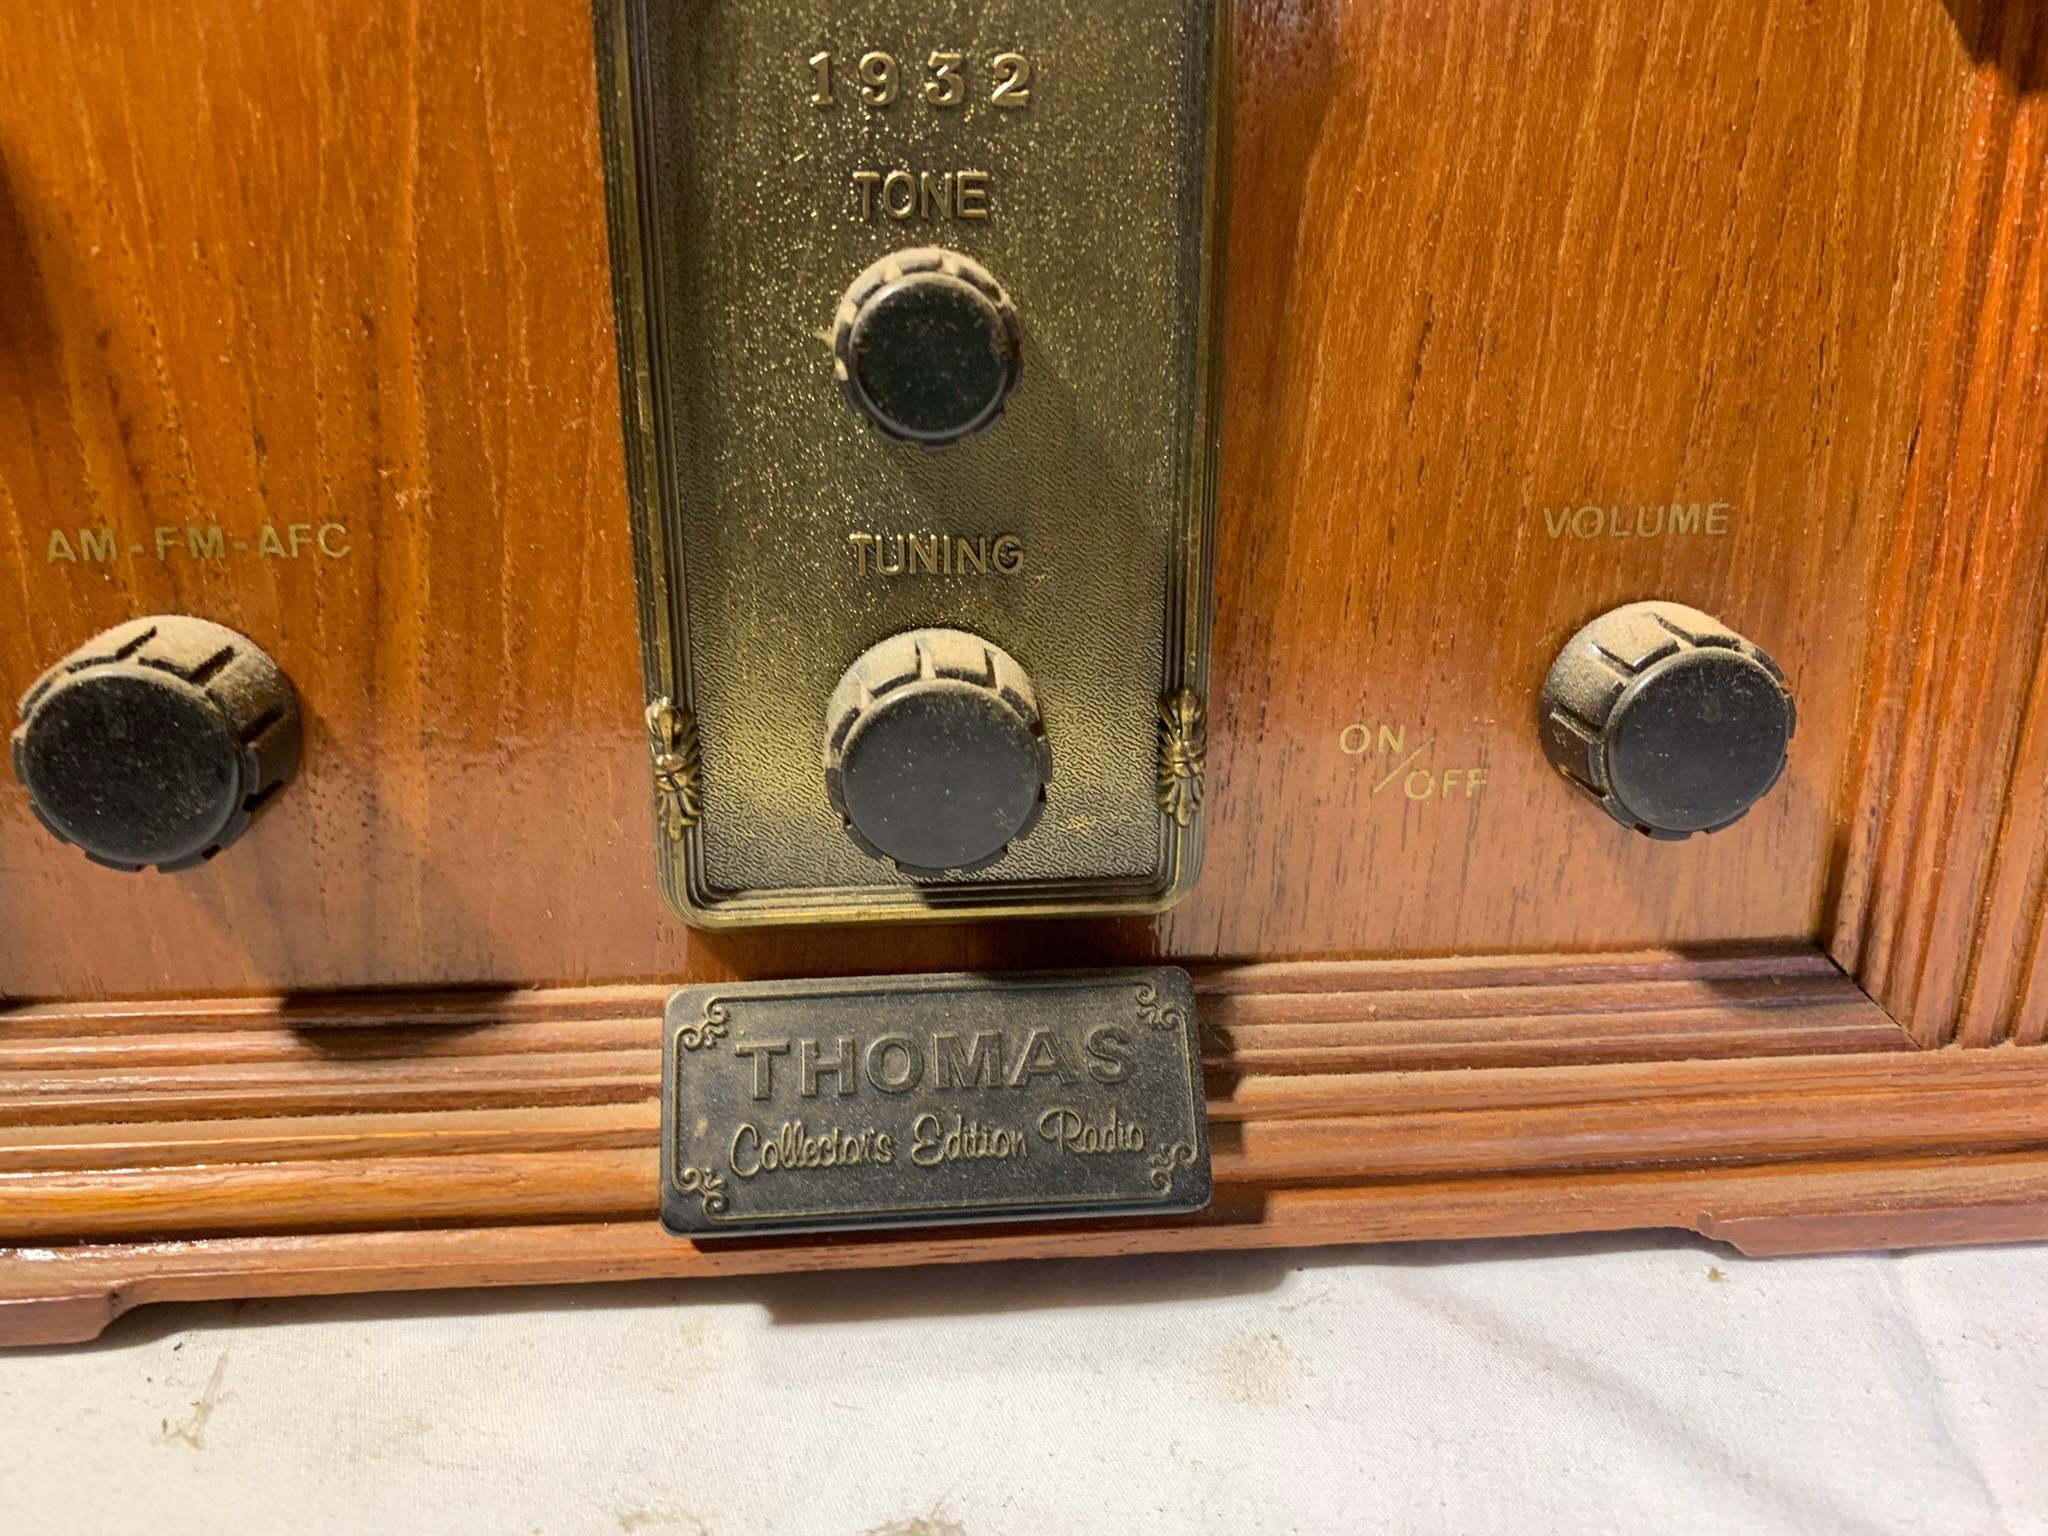 Thomas Collectors Edition Radio Model BD 217